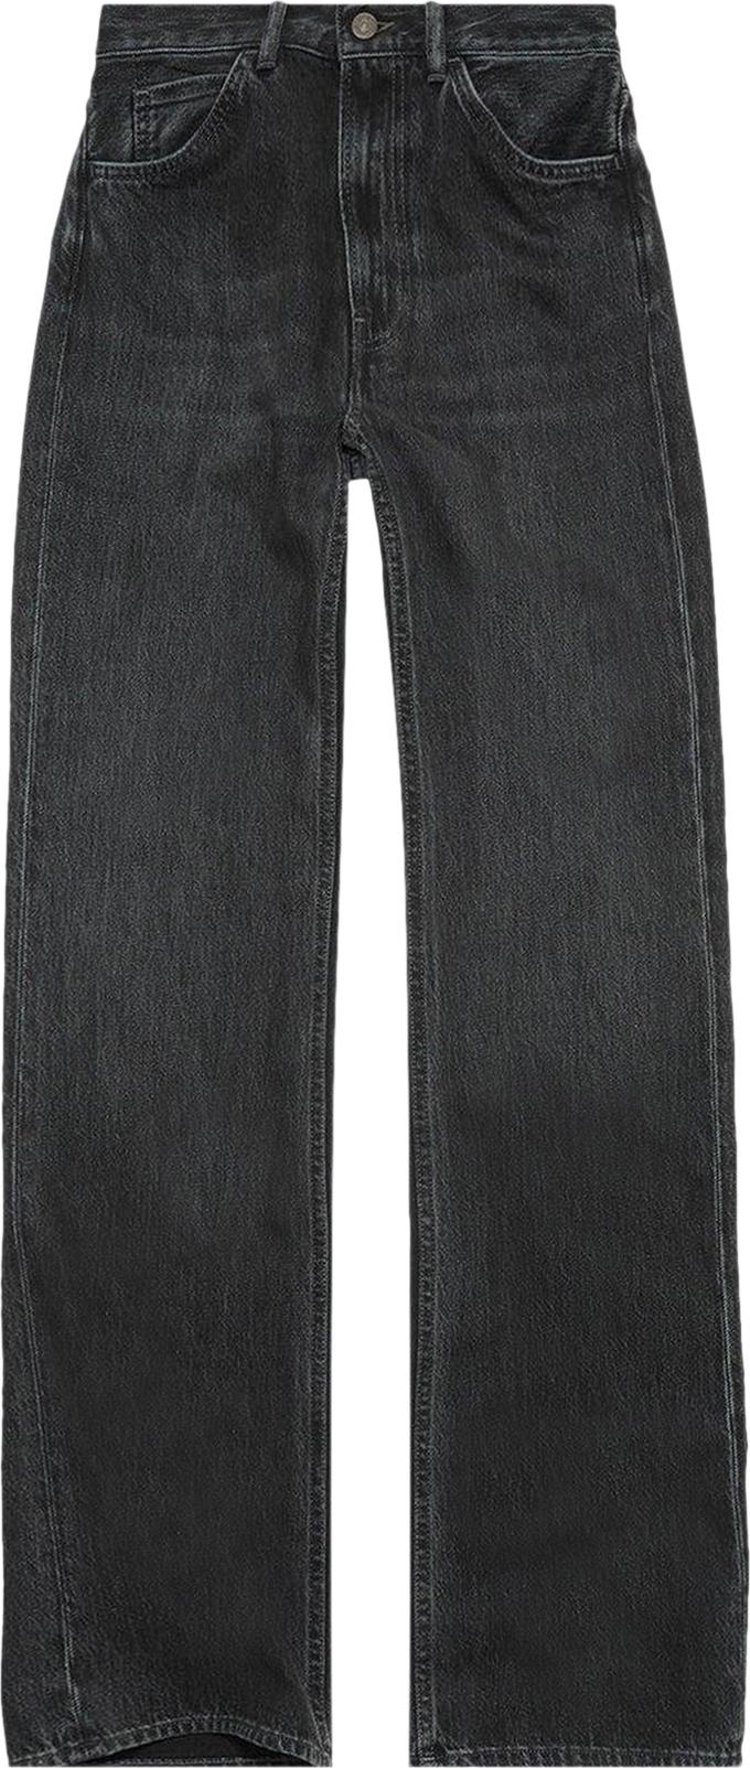 Джинсы Acne Studios 1977 'Black', черный джинсы acne studios classic fit jeans black черный